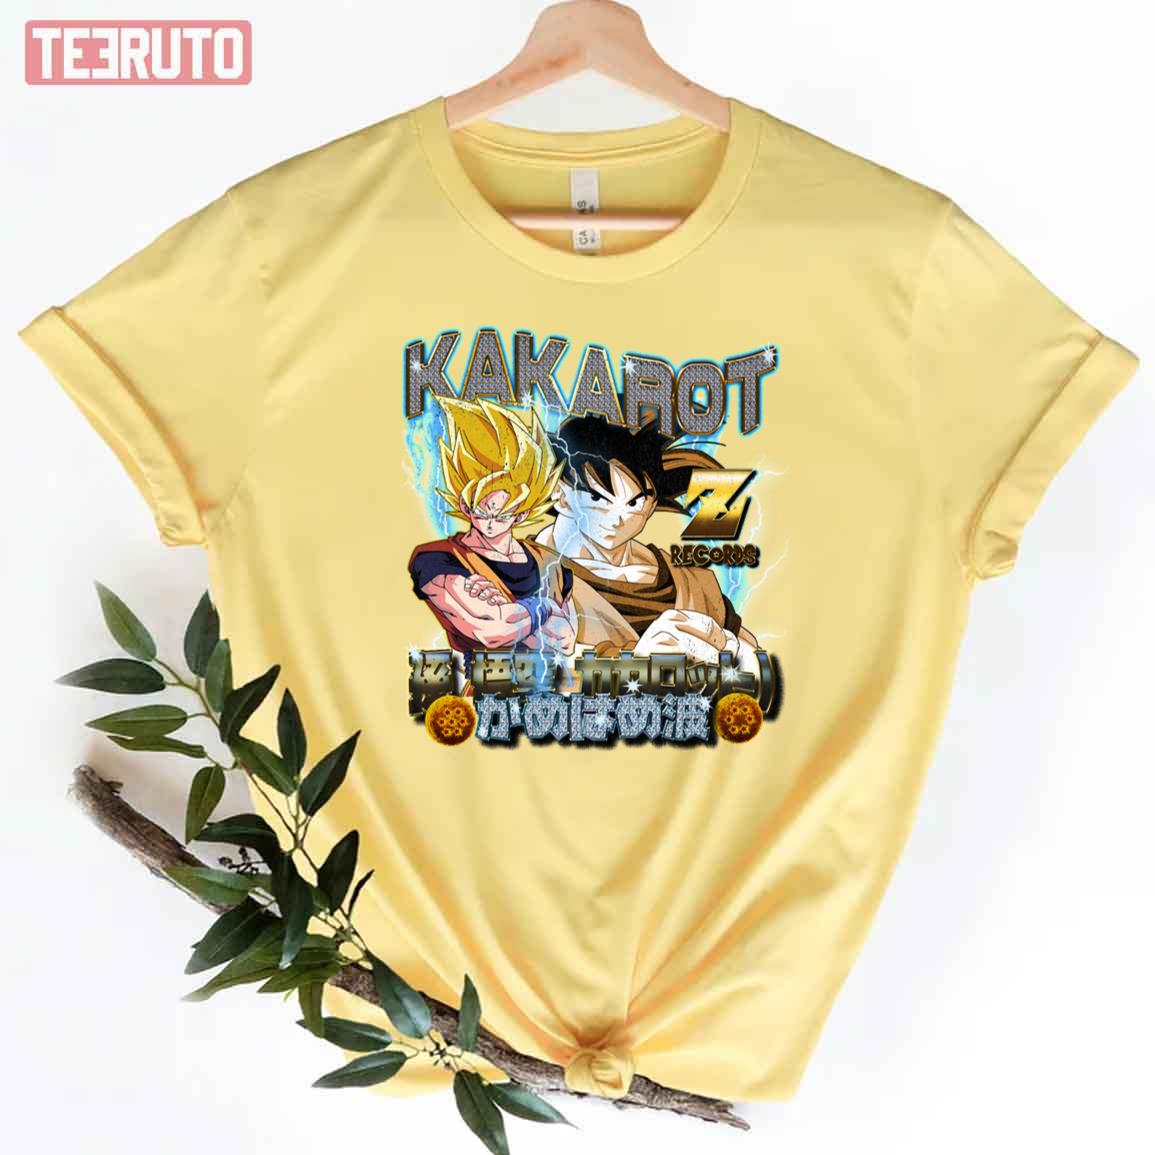 Z Records Kakarot Goku Unisex T-Shirt